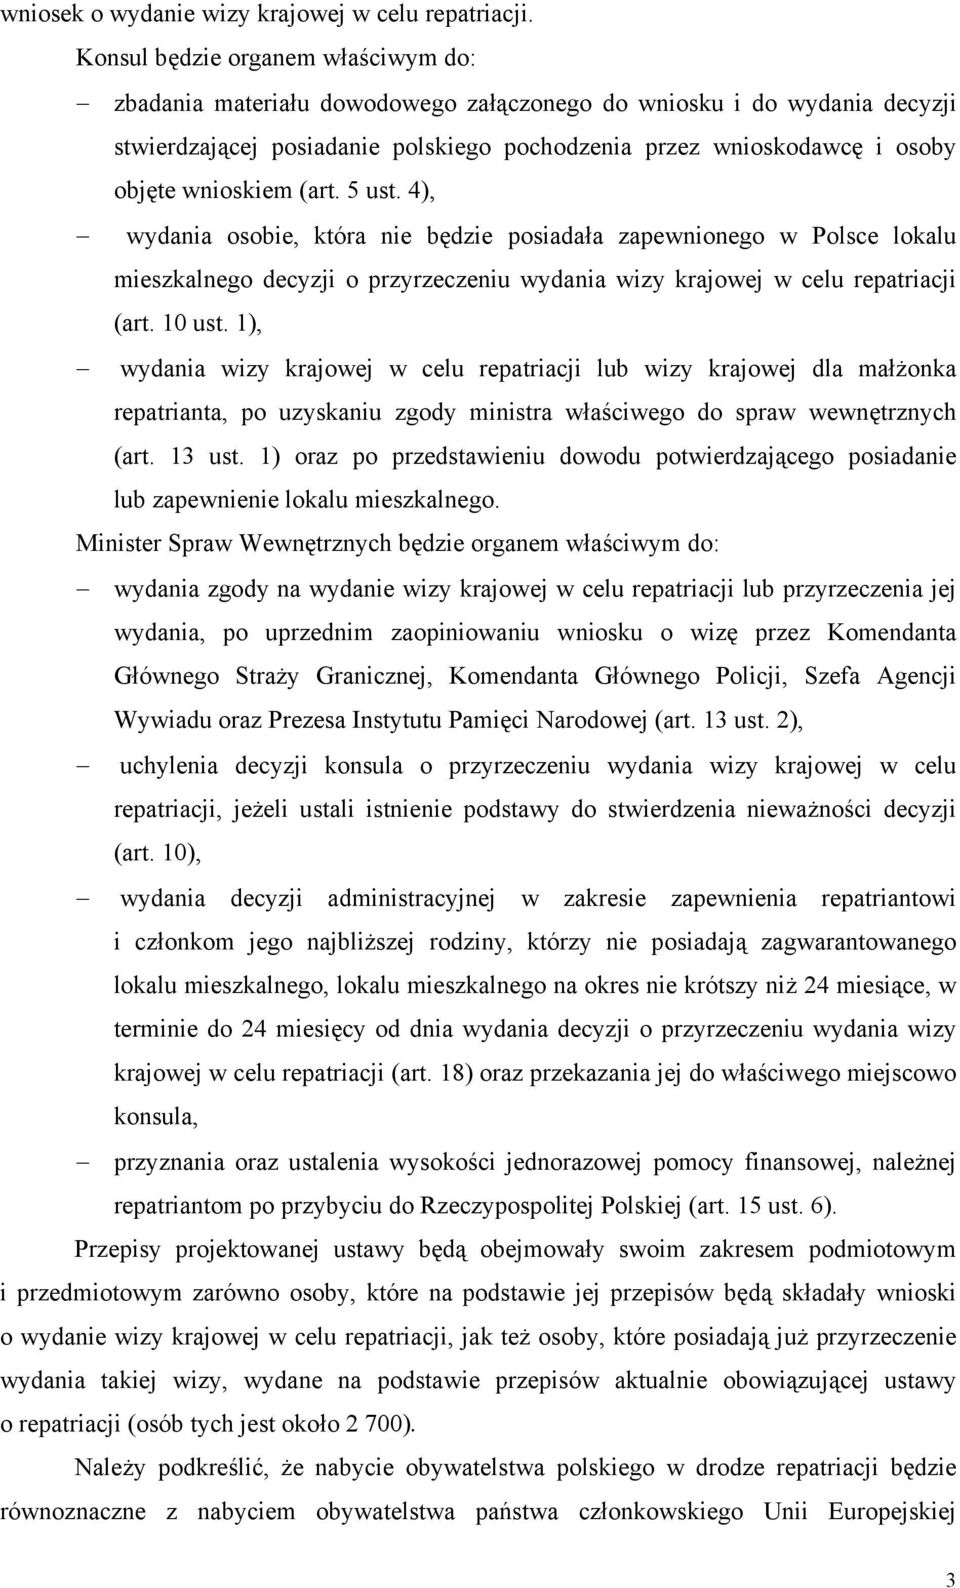 wnioskiem (art. 5 ust. 4), wydania osobie, która nie będzie posiadała zapewnionego w Polsce lokalu mieszkalnego decyzji o przyrzeczeniu wydania wizy krajowej w celu repatriacji (art. 10 ust.